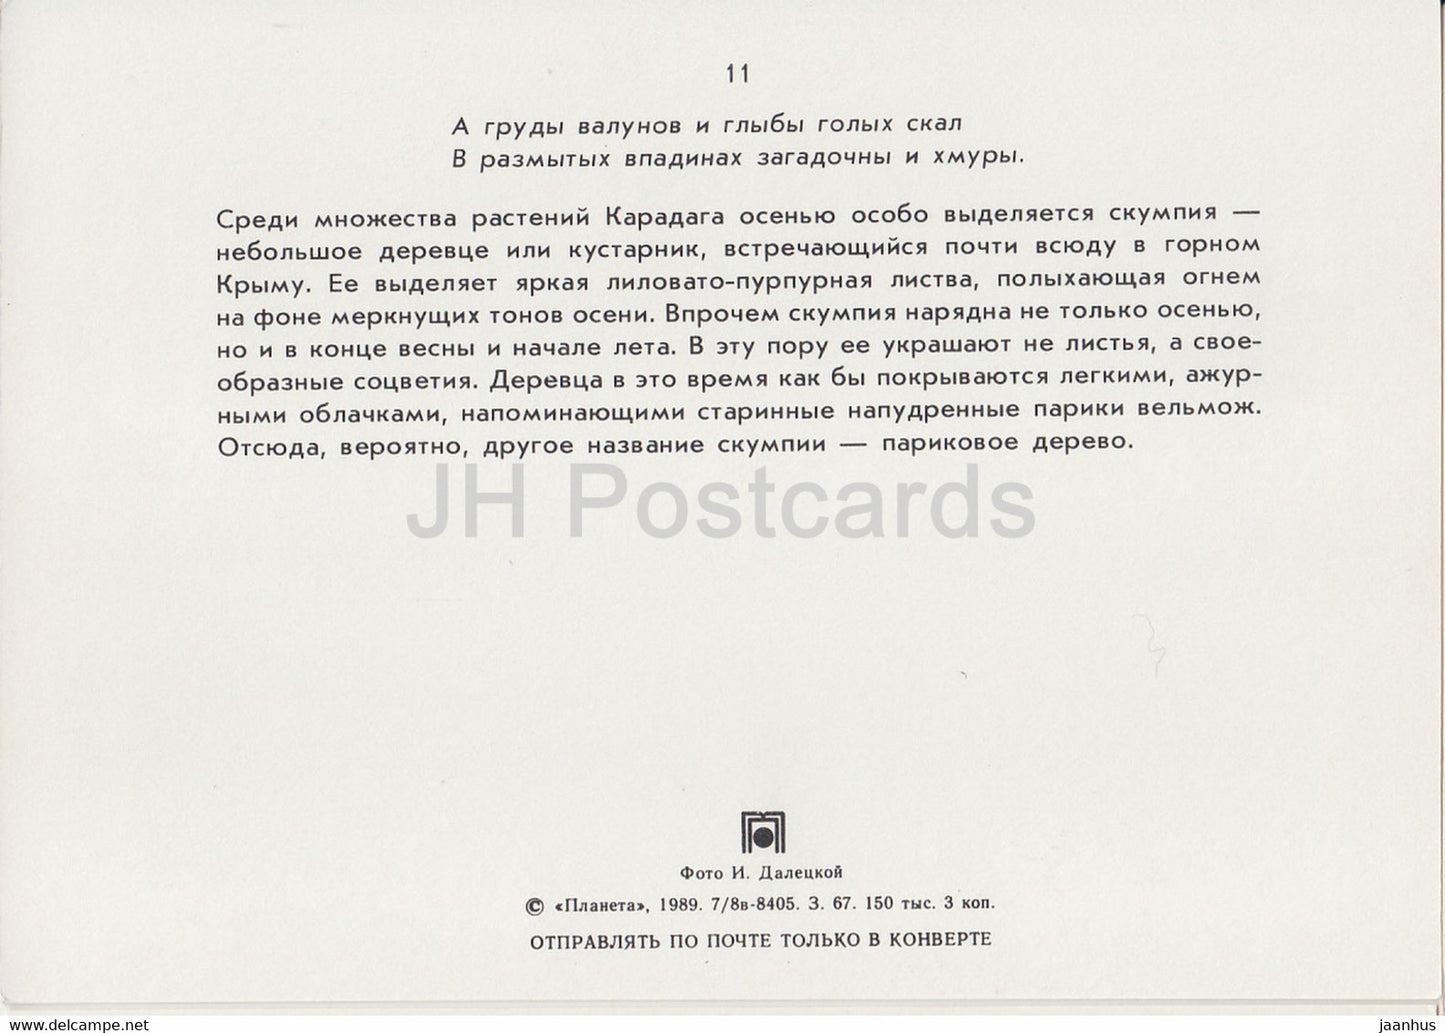 Karadag - Scumpia tree - plants - Crimea - 1989 - Ukraine USSR - unused